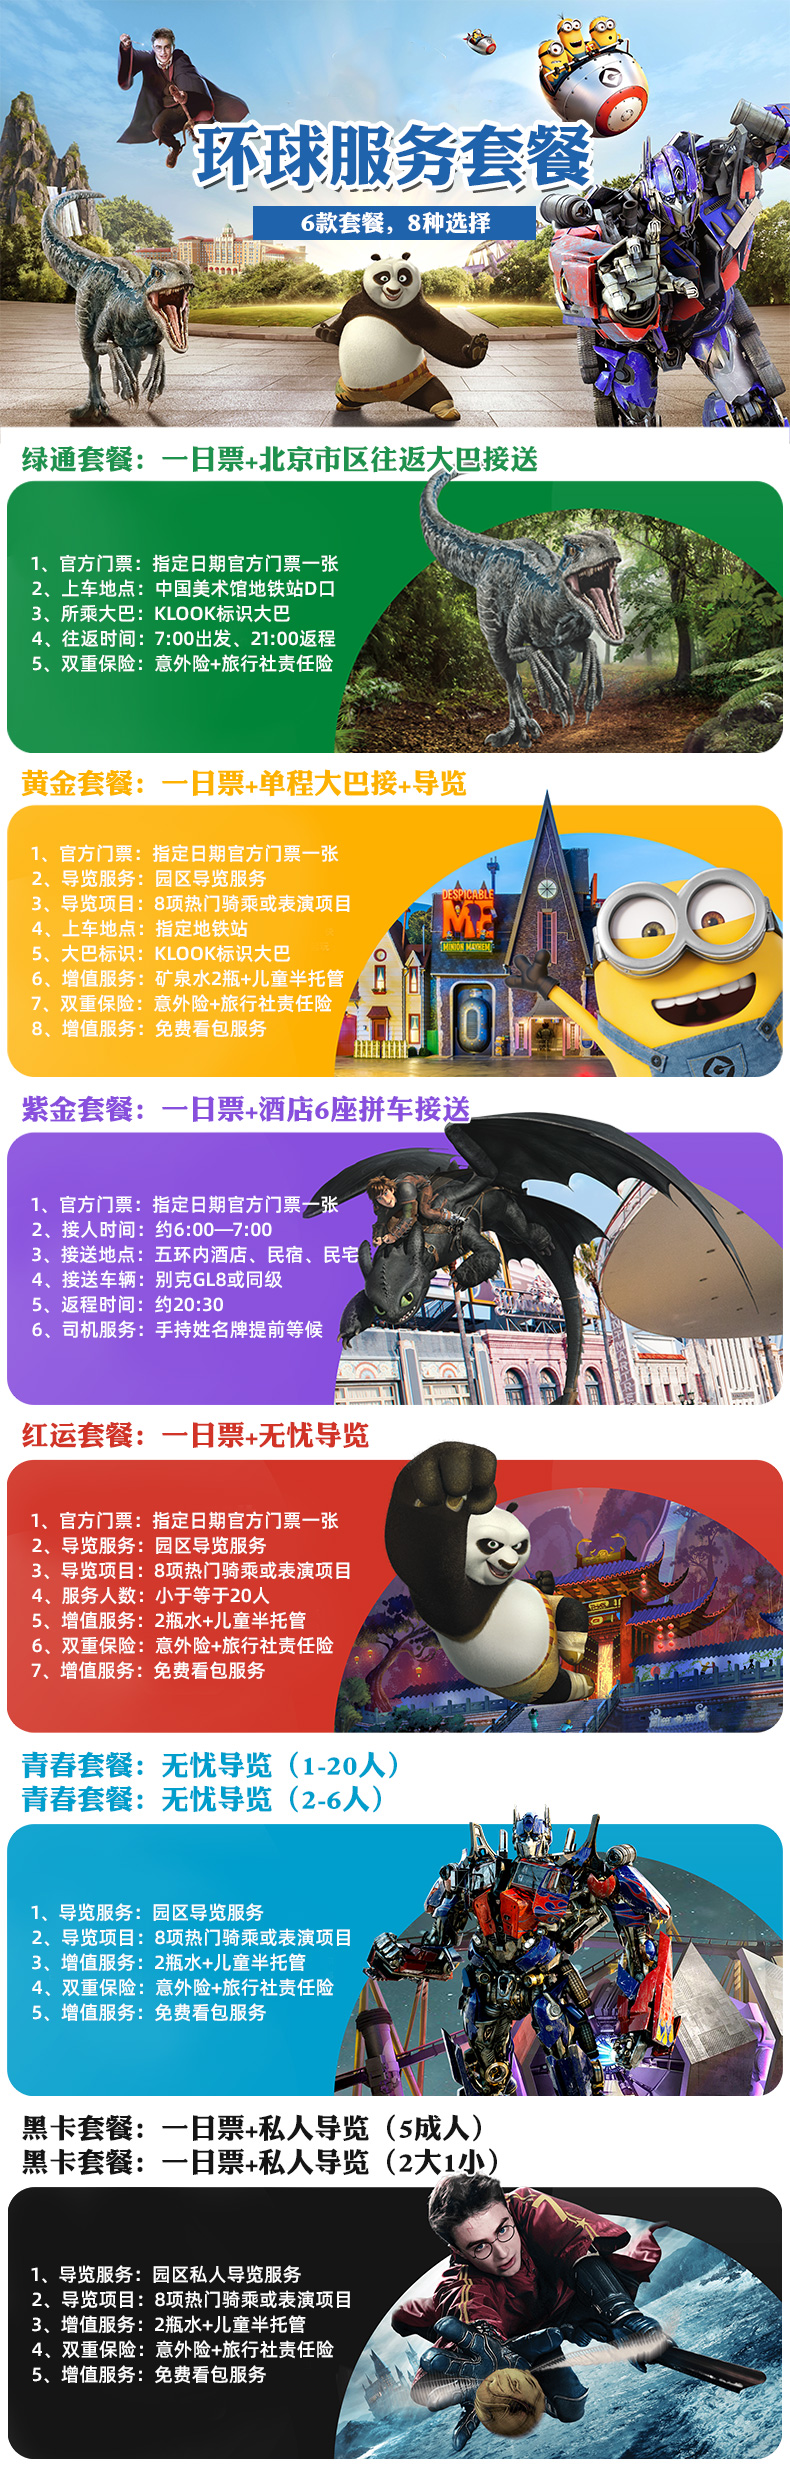 北京环球度假区门票怎么买 北京环球影城门票9月14日起可预订四档门票最低418元